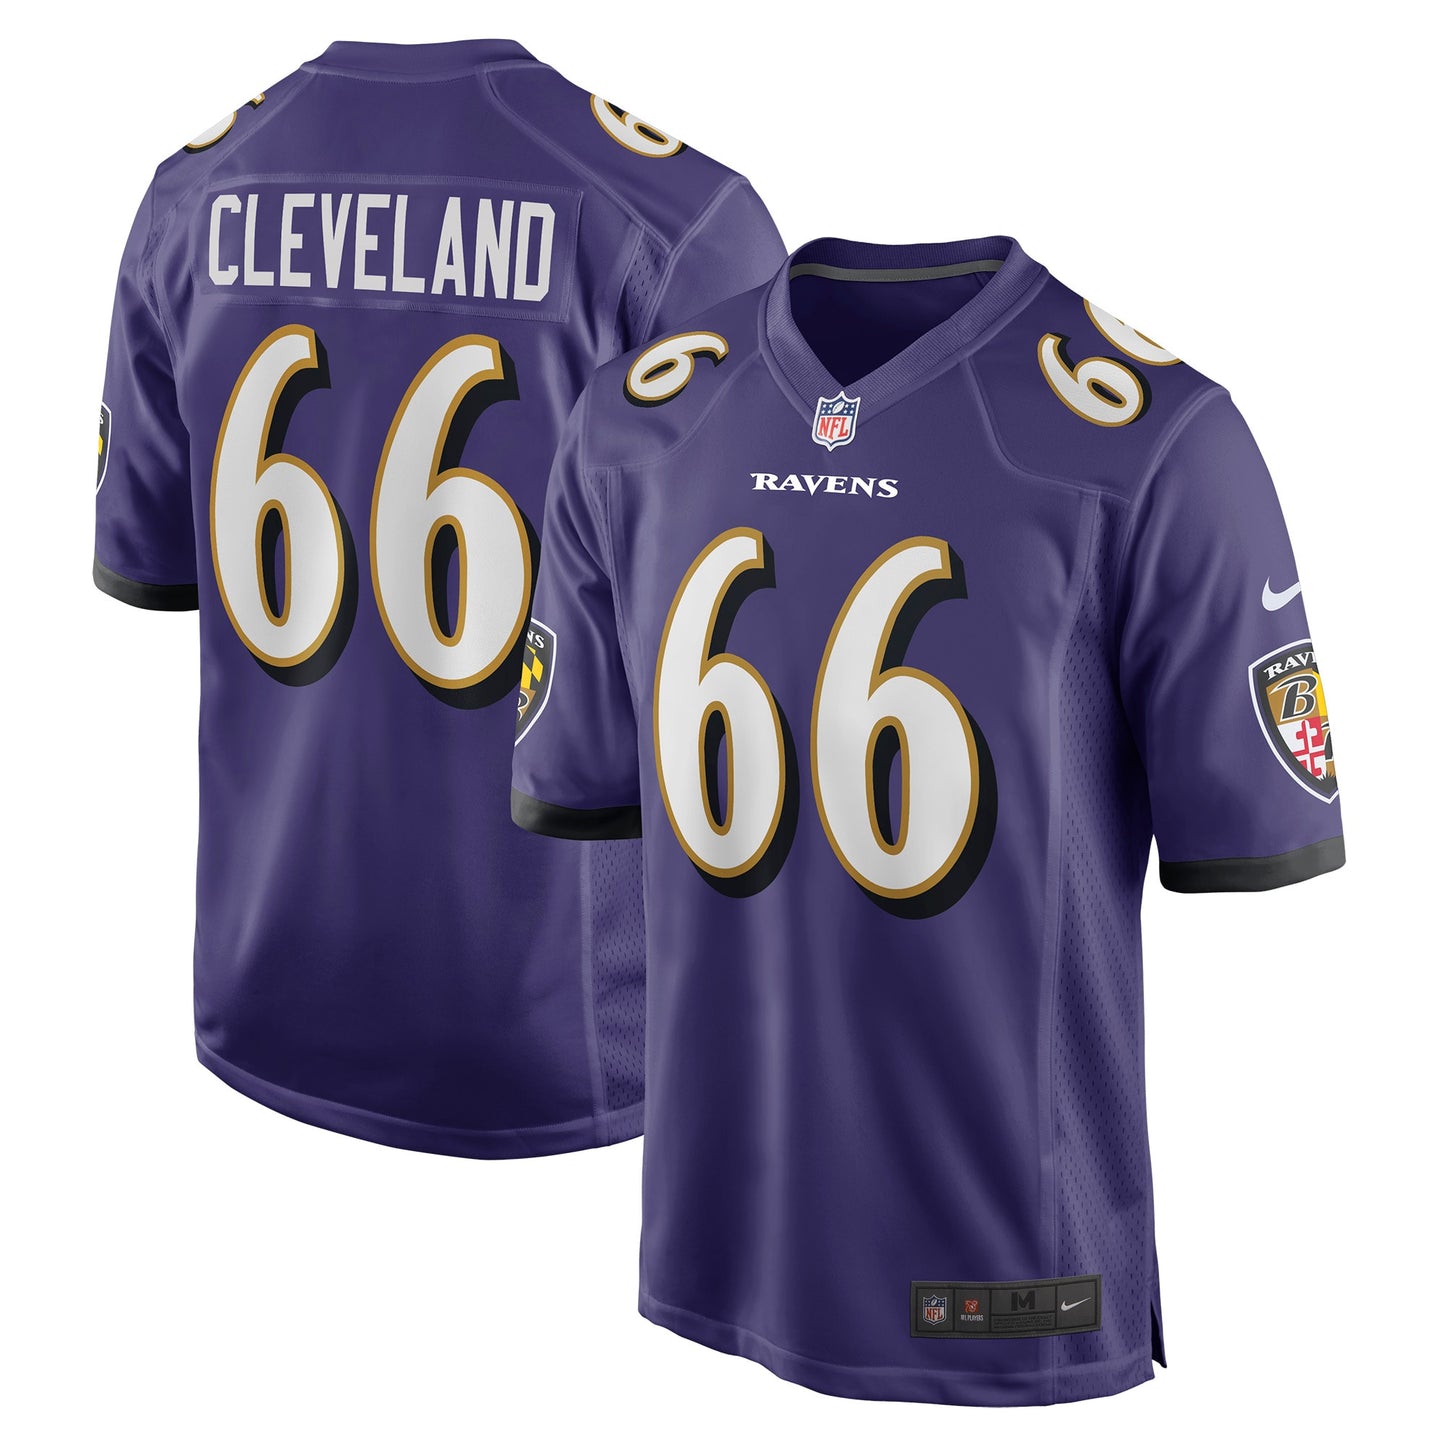 Ben Cleveland Baltimore Ravens Nike Game Jersey - Purple